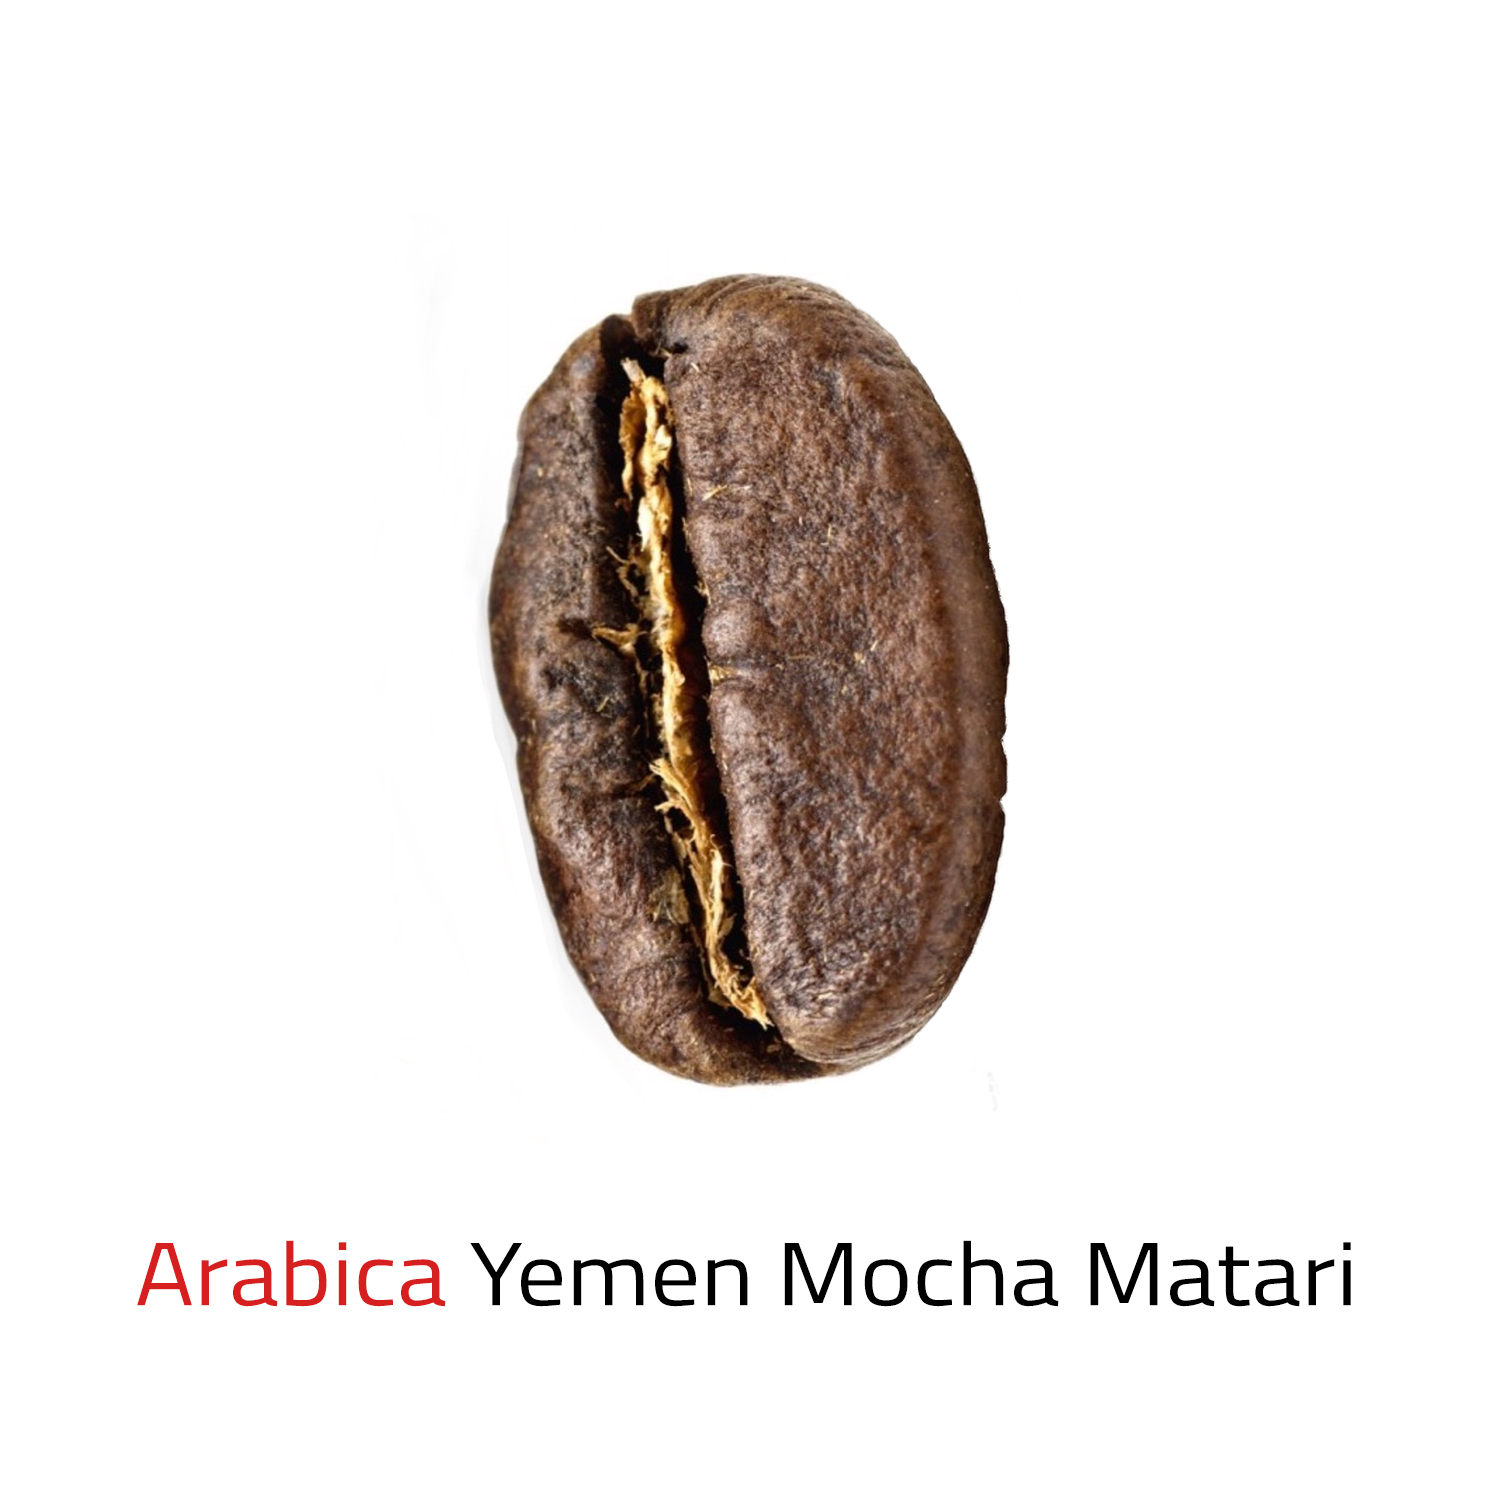 Arabica Yemen Mocha Matari 100g